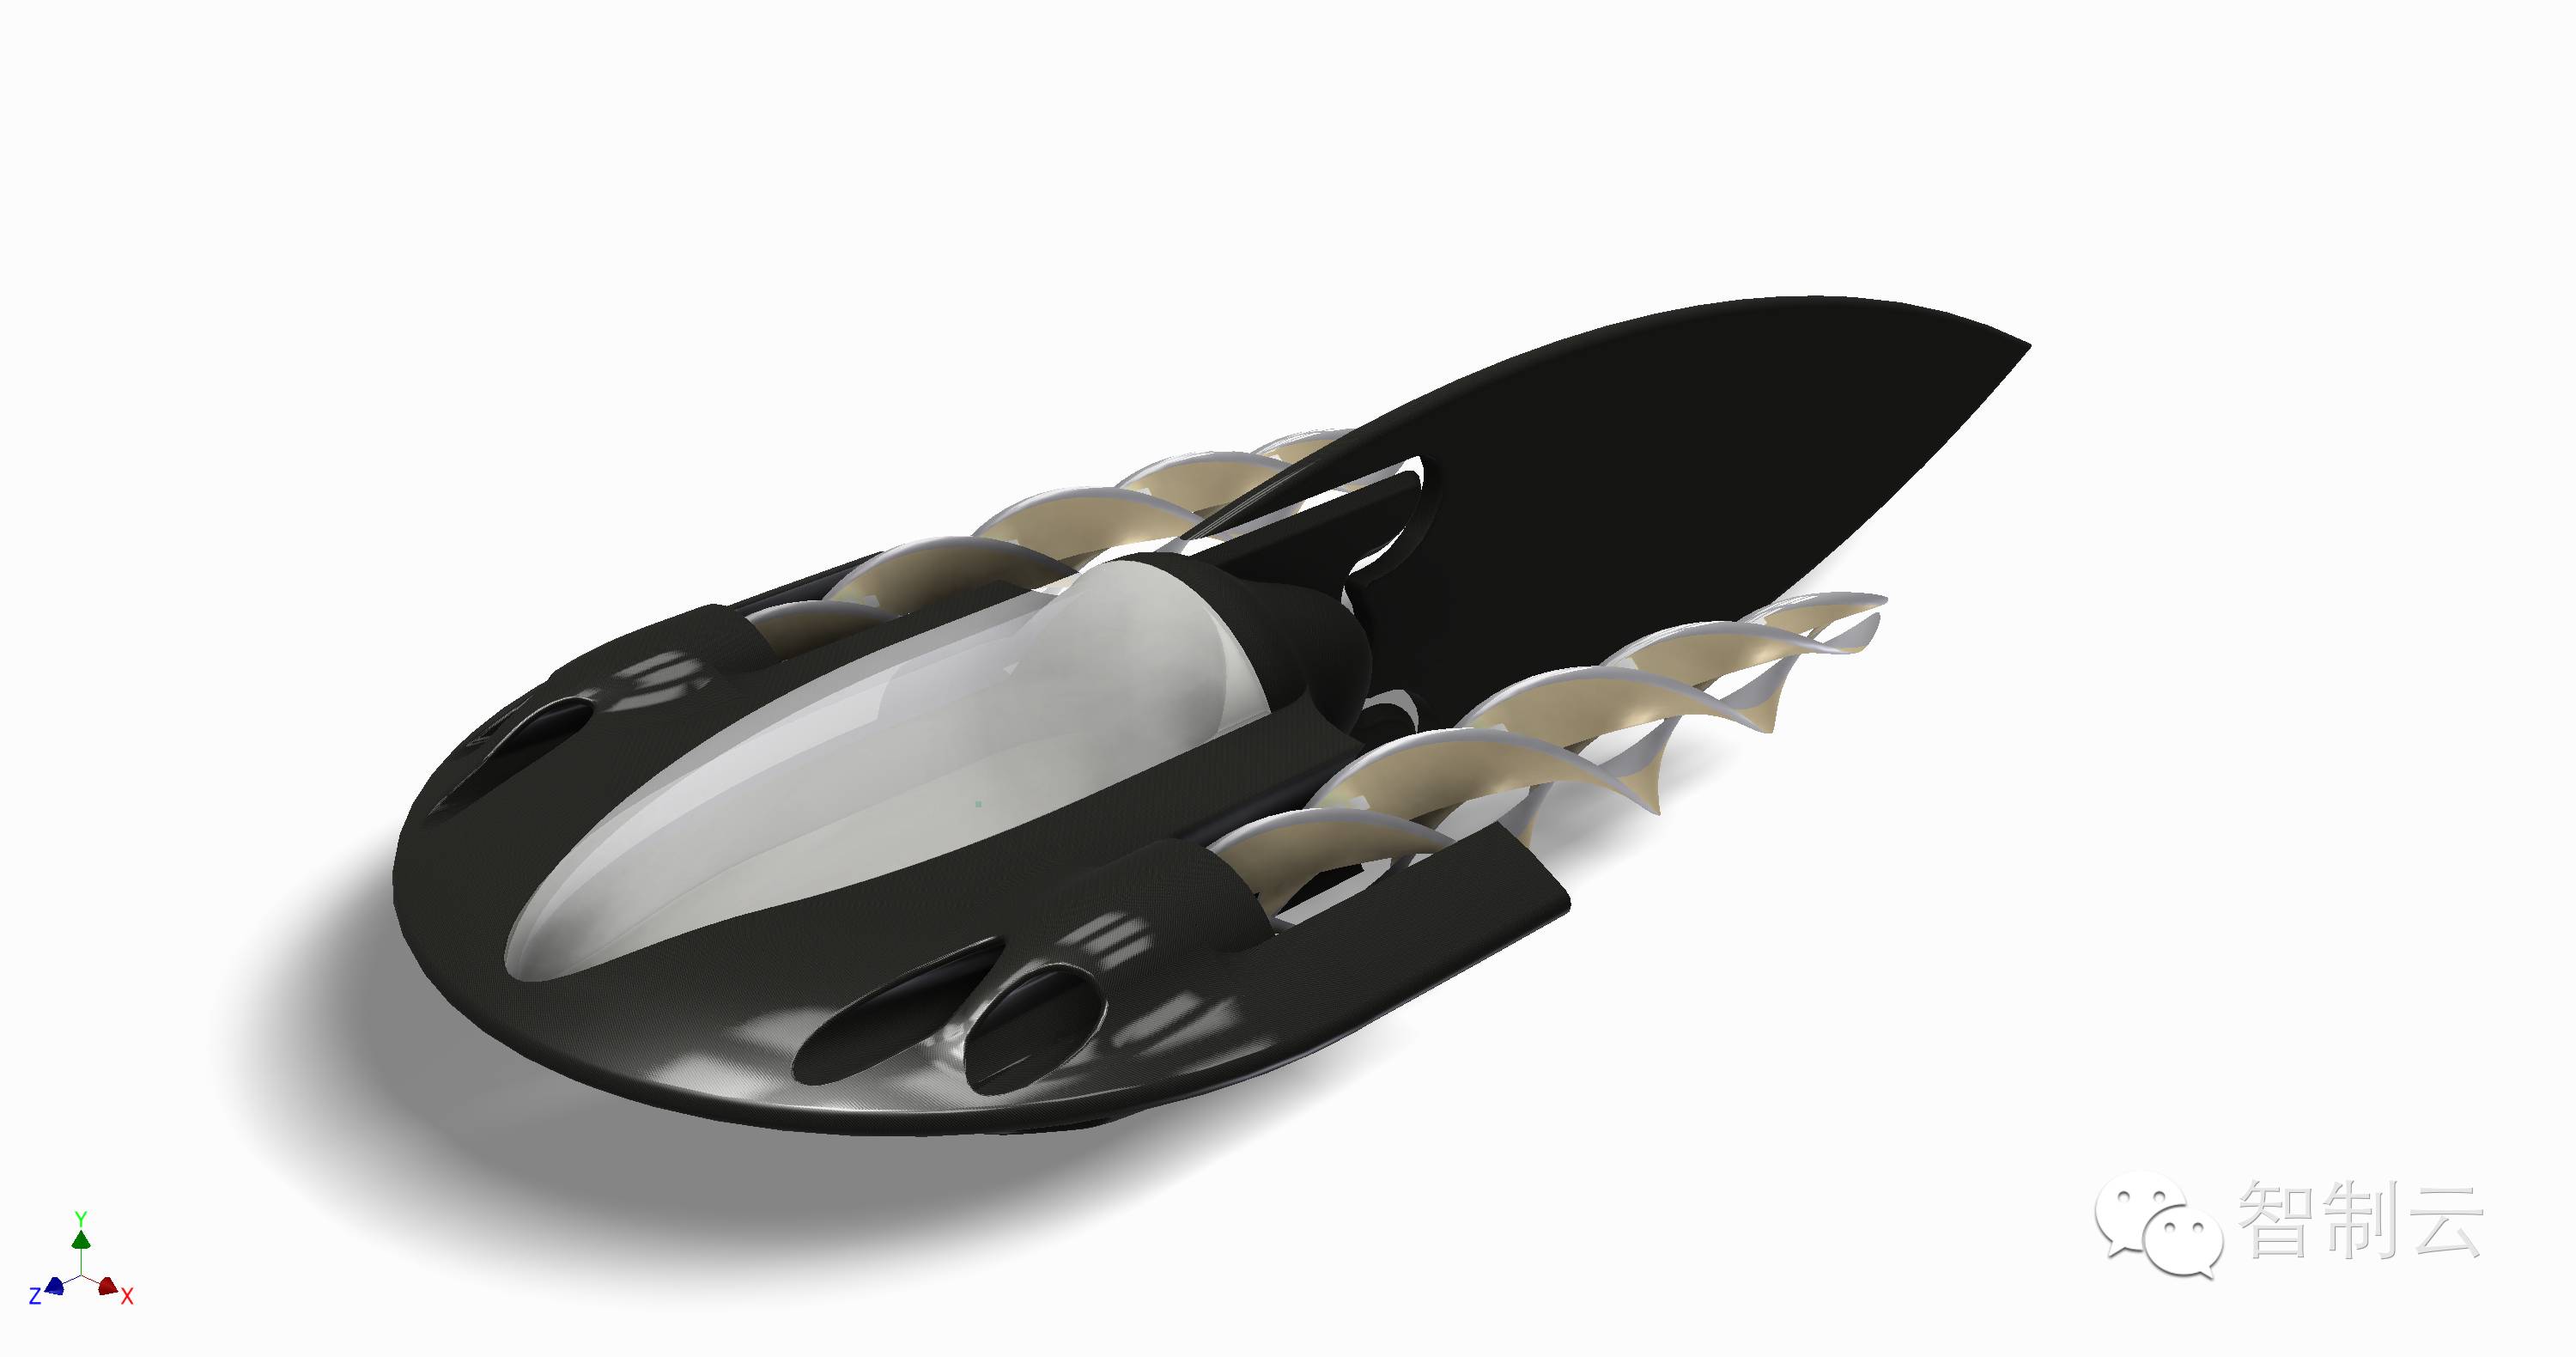 【海洋船舶】超酷概念潜艇造型设计三维图 Inventor设计